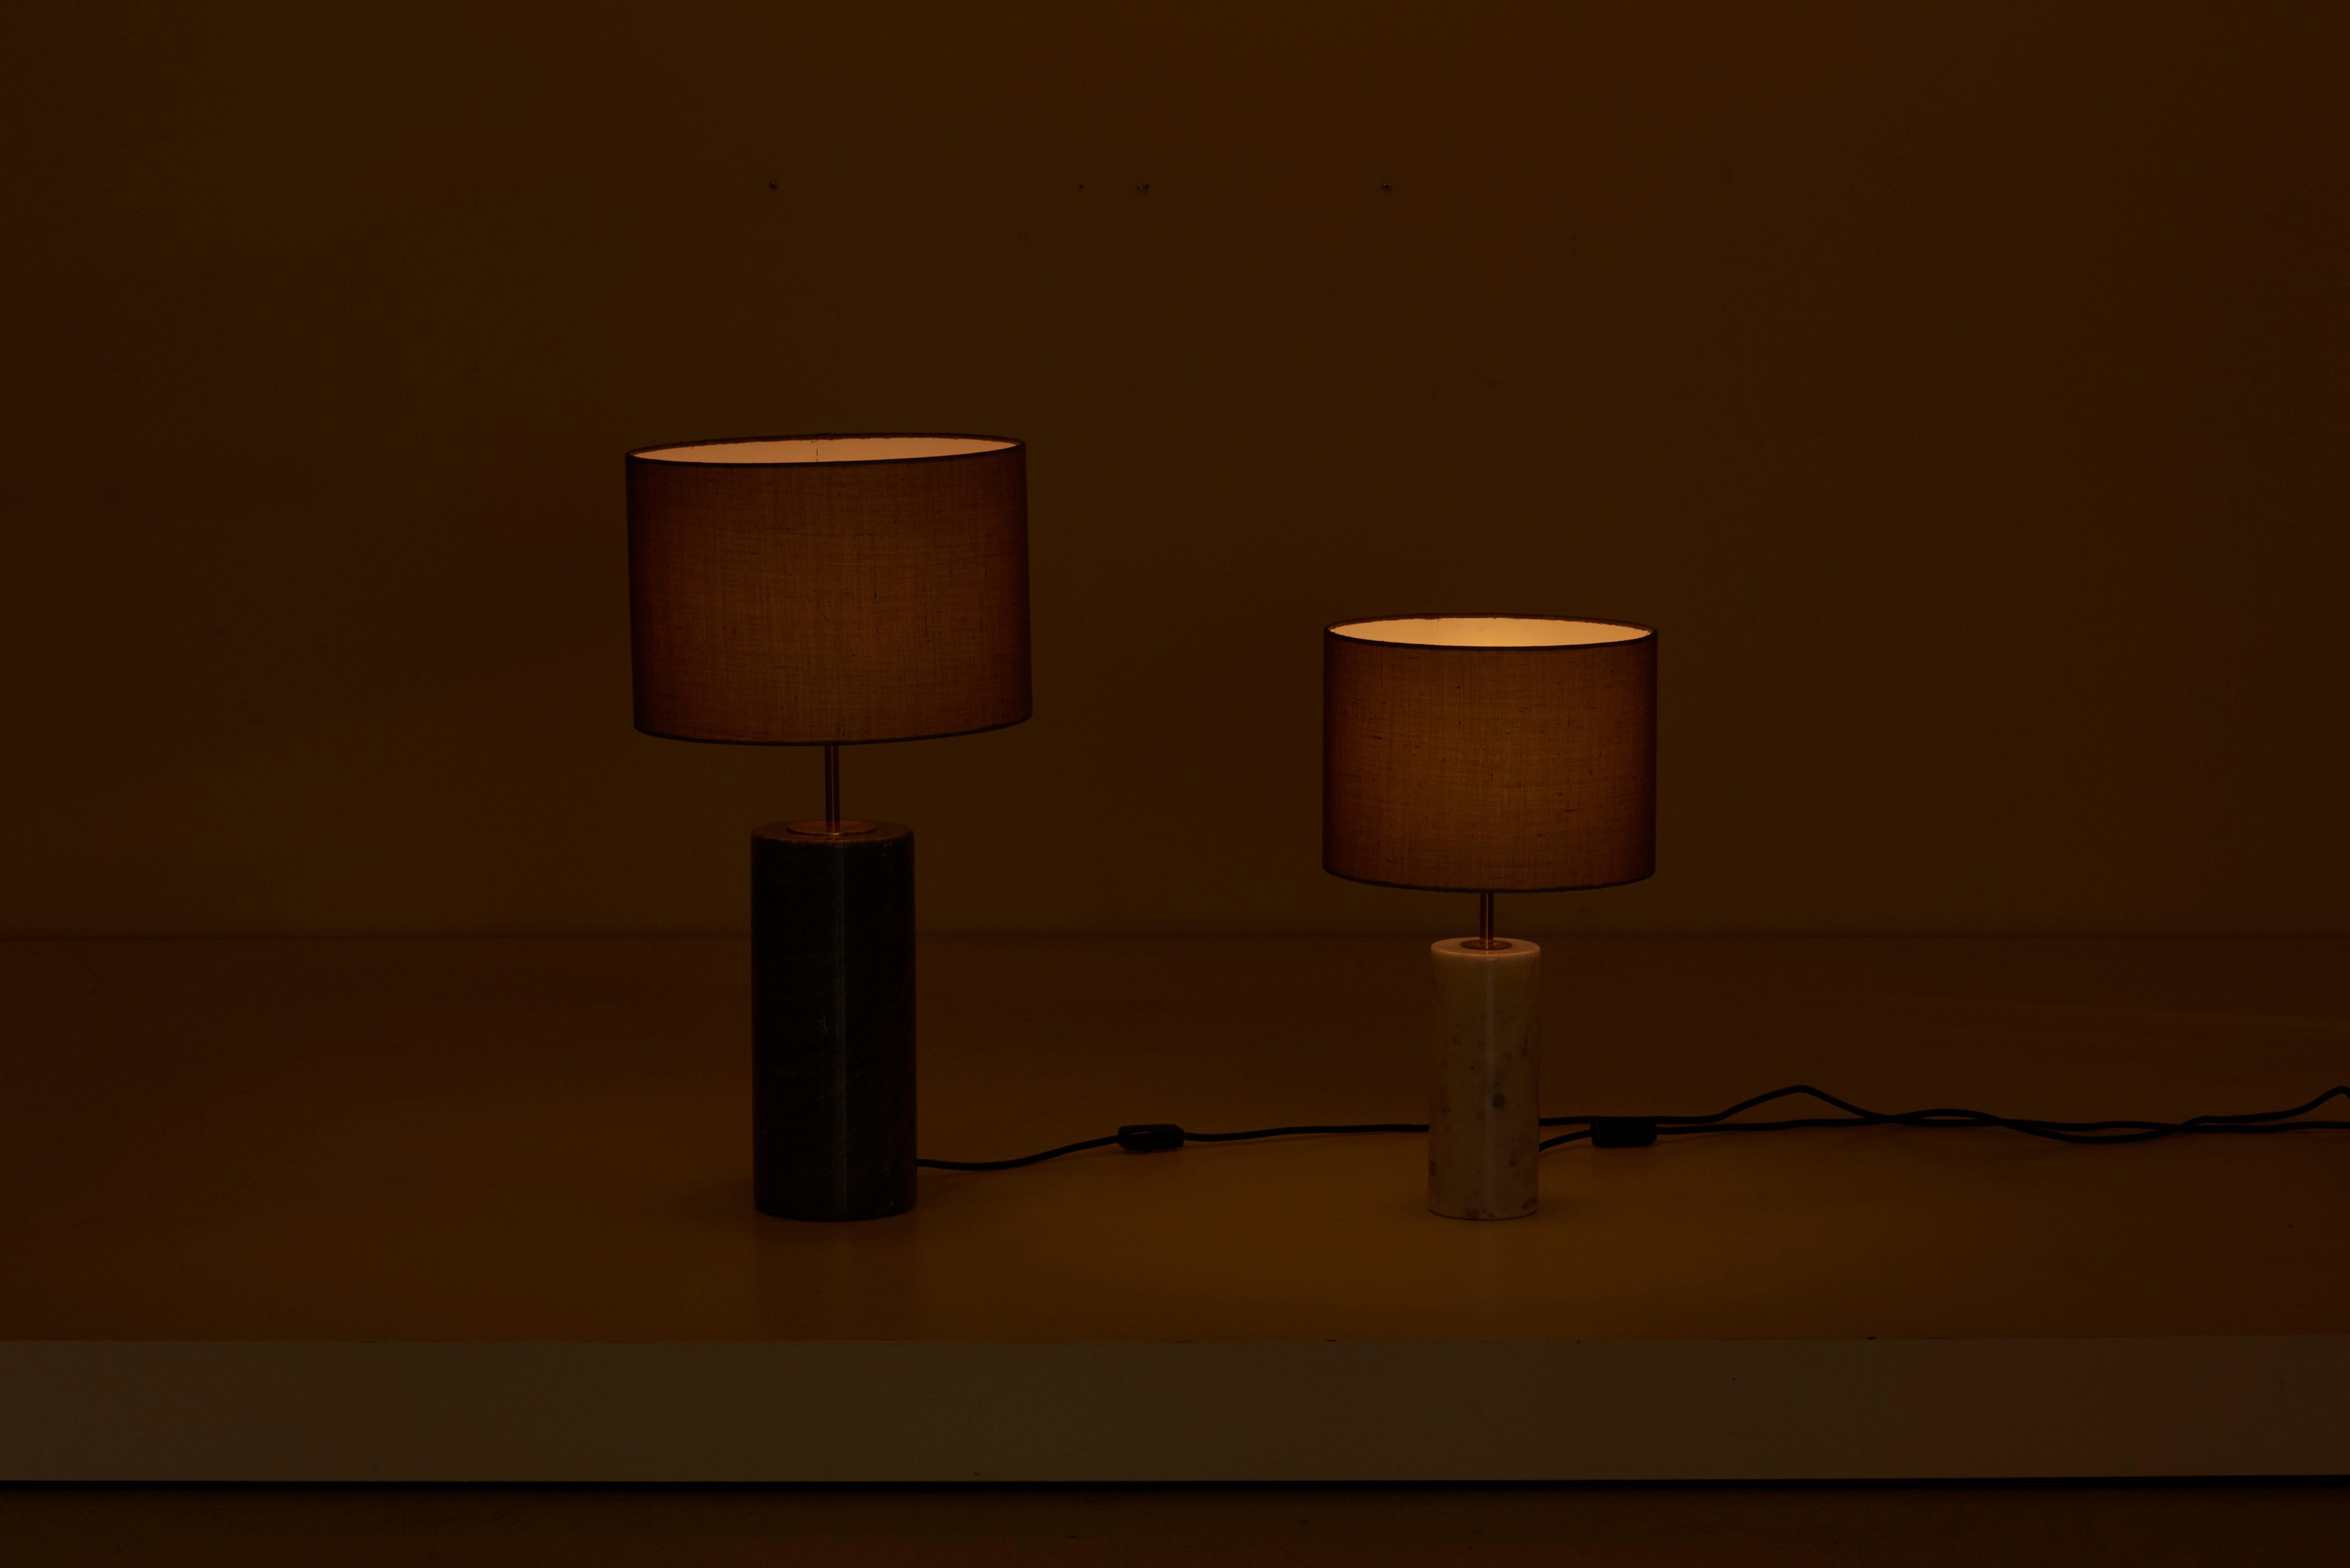 Paire de lampes de table en marbre blanc et gris à la manière de Florence Knoll.

Les mesures pour le plus petit sont :
Dm 54 cm x H 30,5 cm (Dm 21.26 in. x H 12.01 in.).
1 x ampoules E27 chacune.

Pour plus de sécurité, la lampe doit être